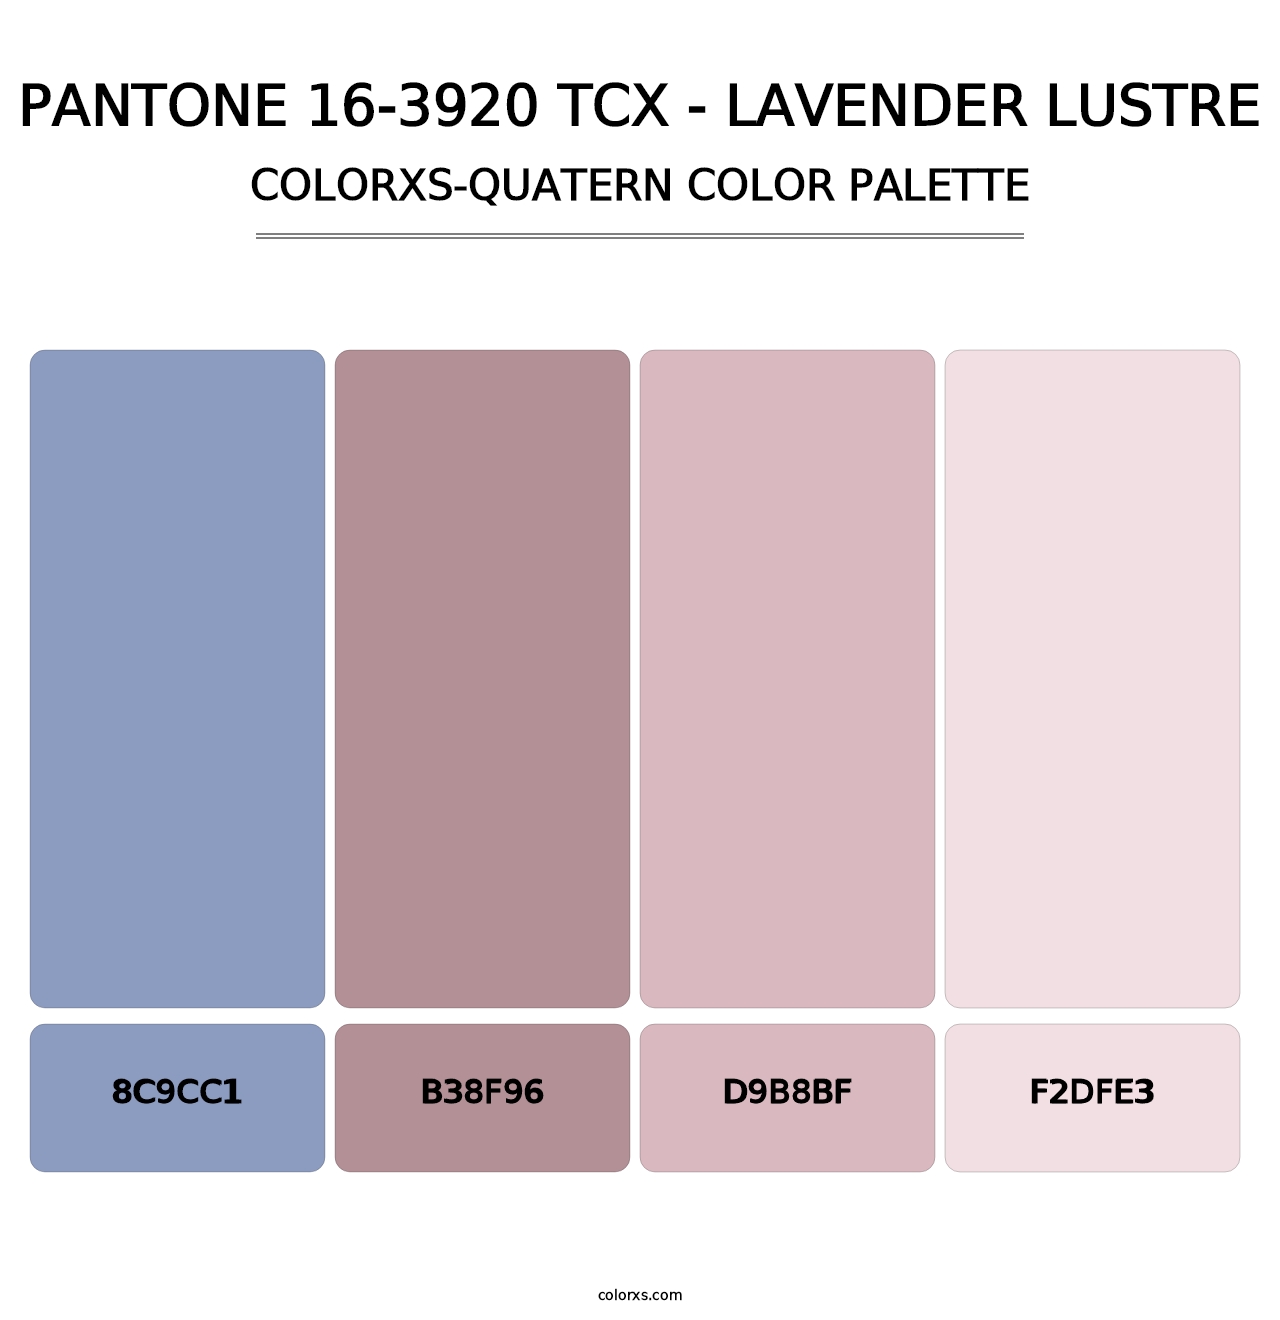 PANTONE 16-3920 TCX - Lavender Lustre - Colorxs Quatern Palette